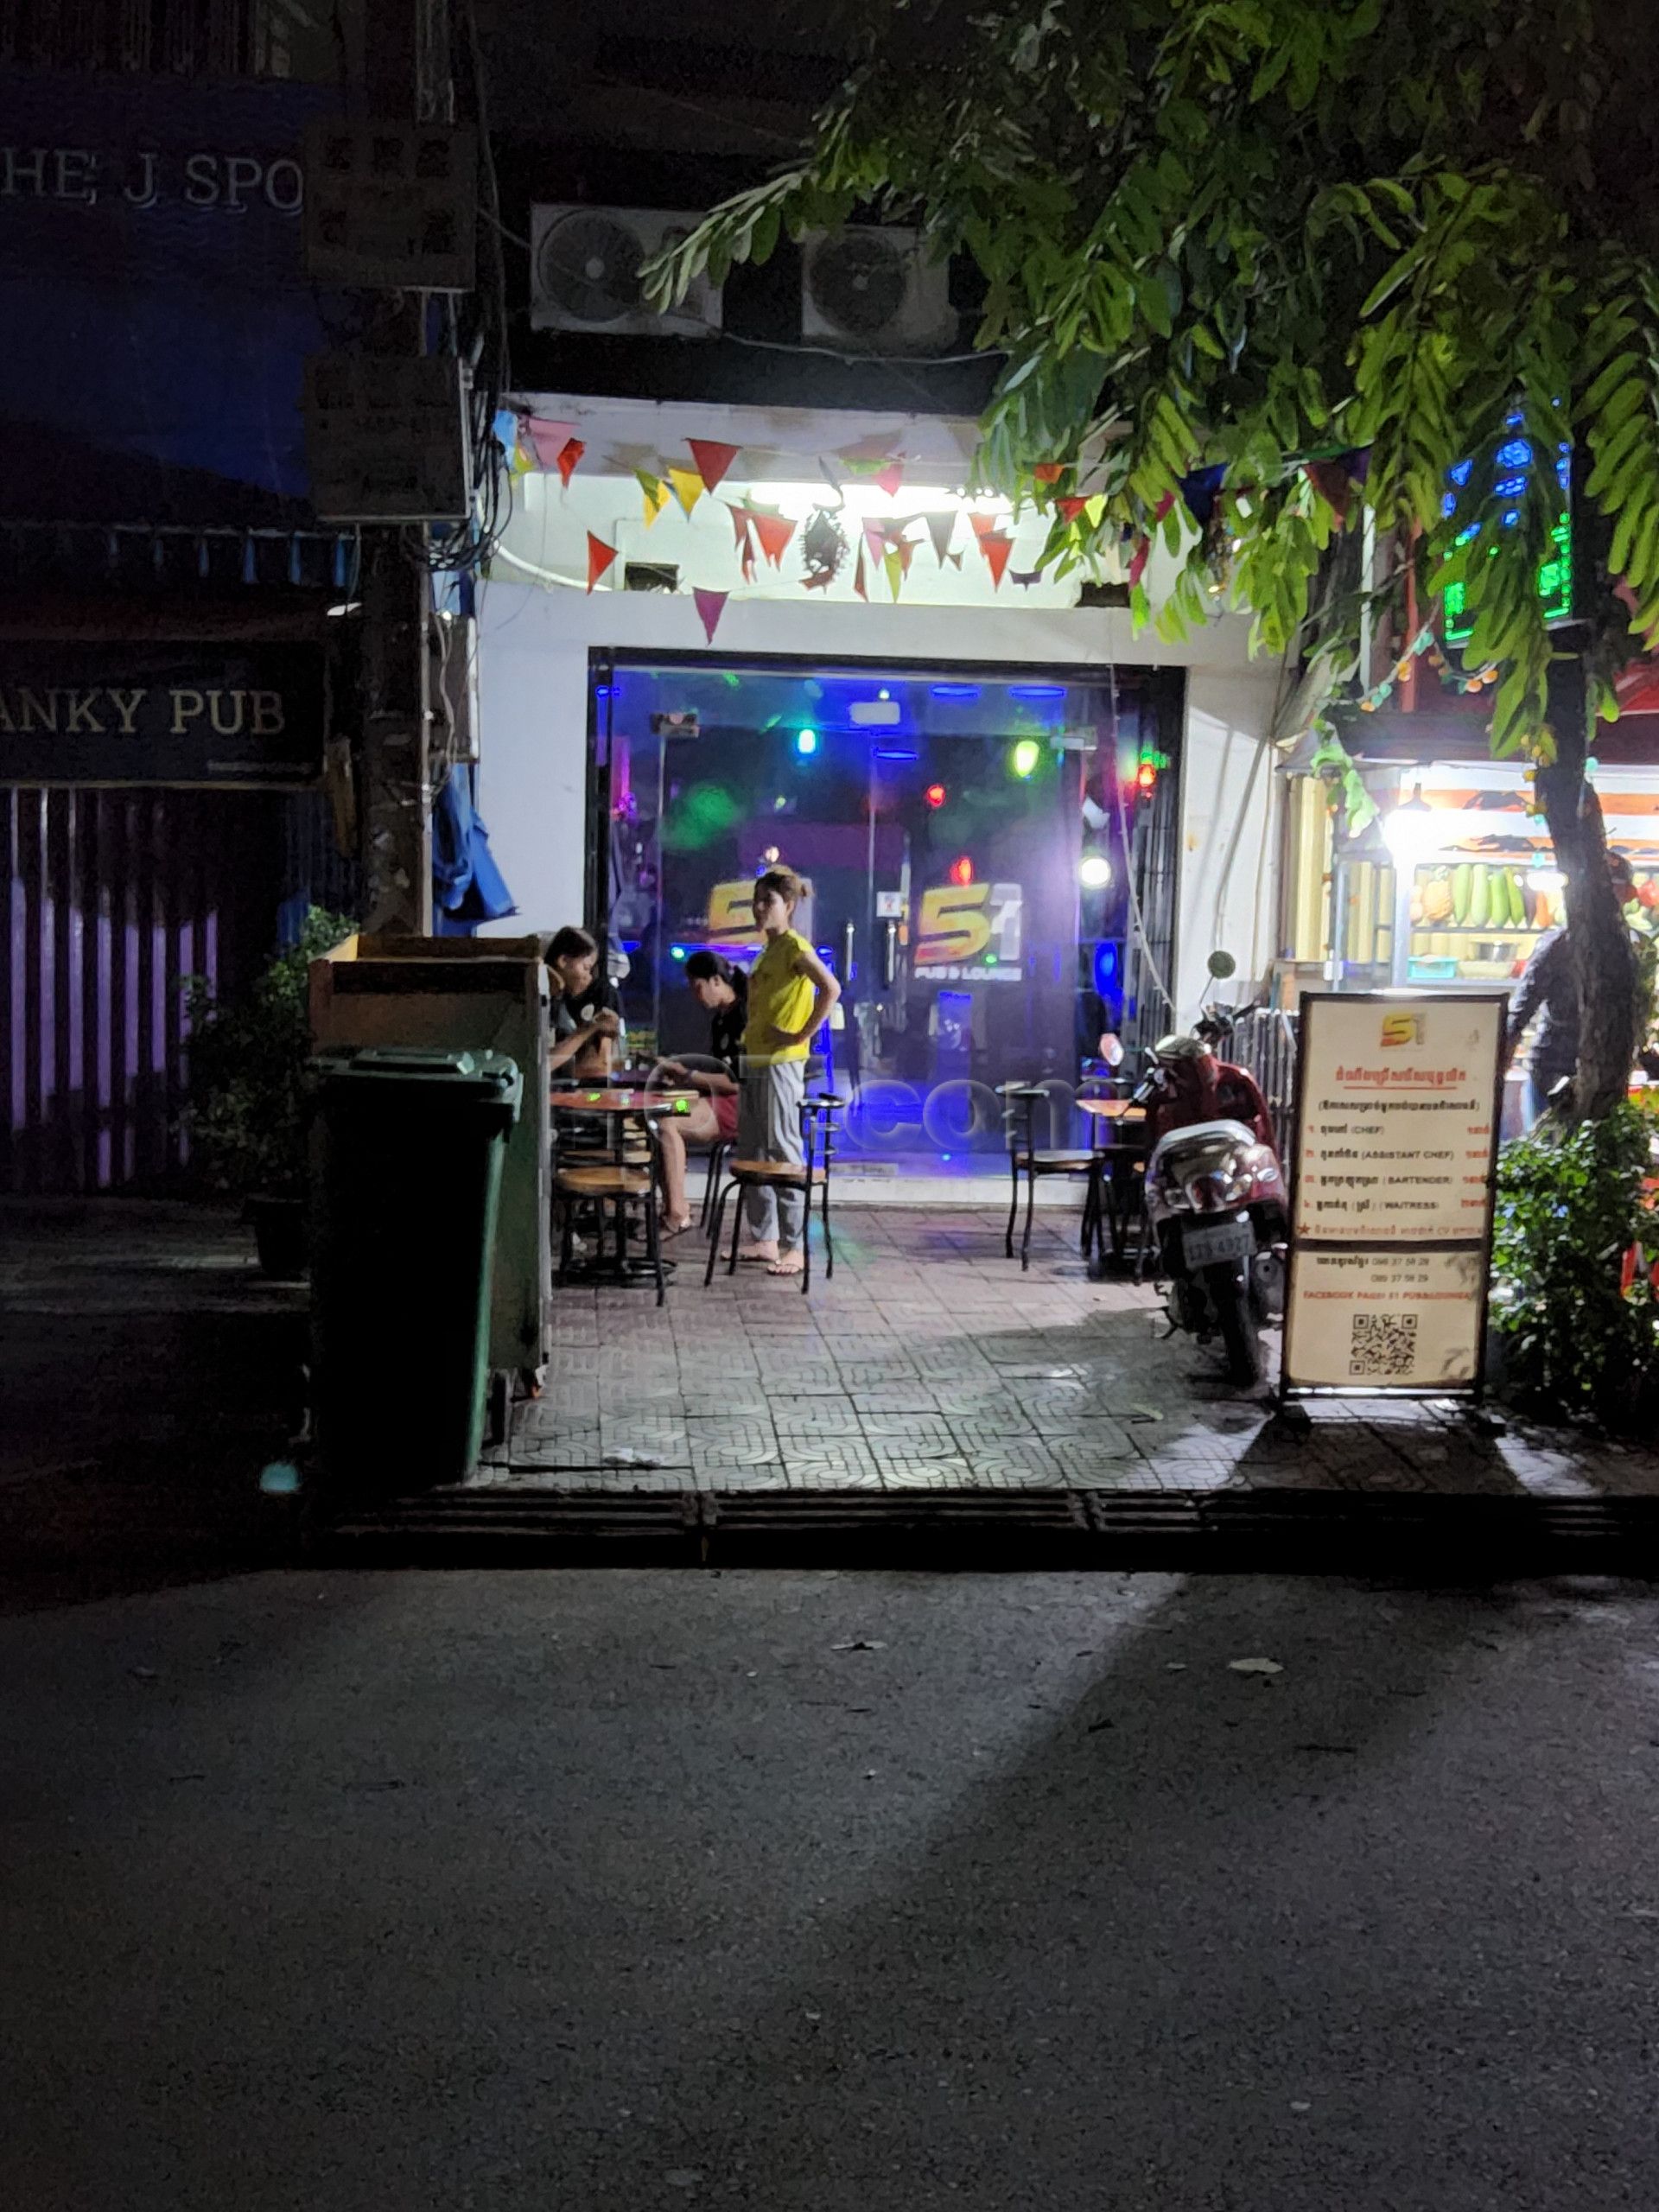 Phnom Penh, Cambodia 51 Pub & Lounge